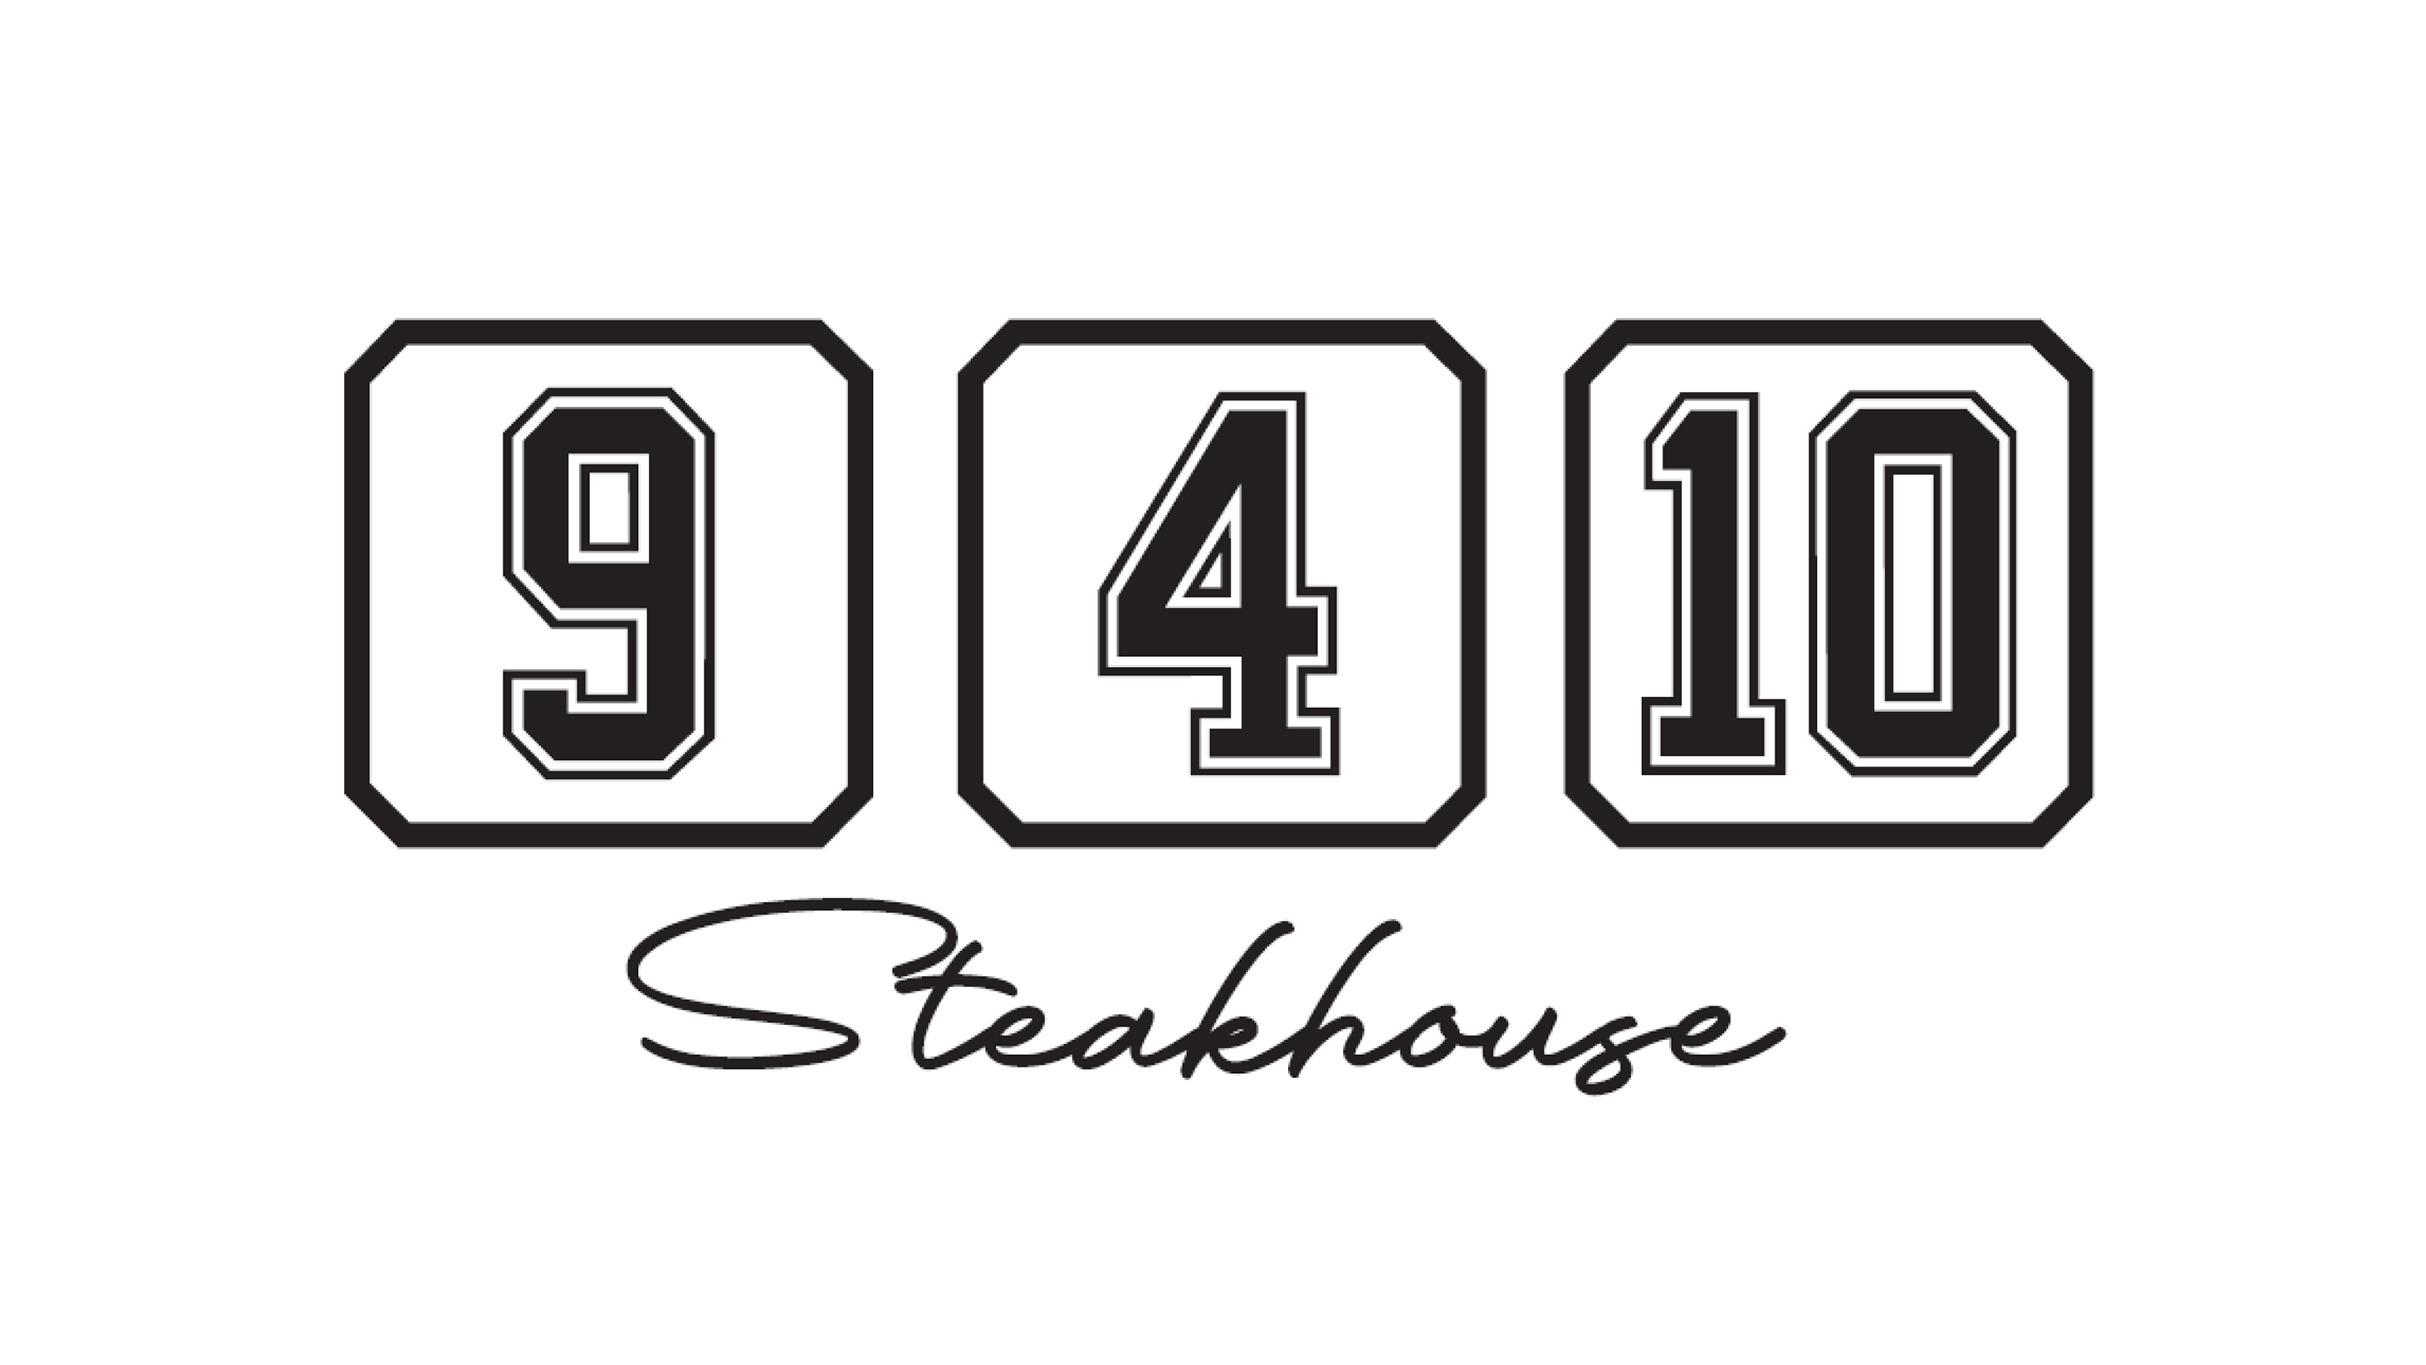 Centre Bell - Restaurant 9-4-10 Steakhouse - Sebastian Maniscalco